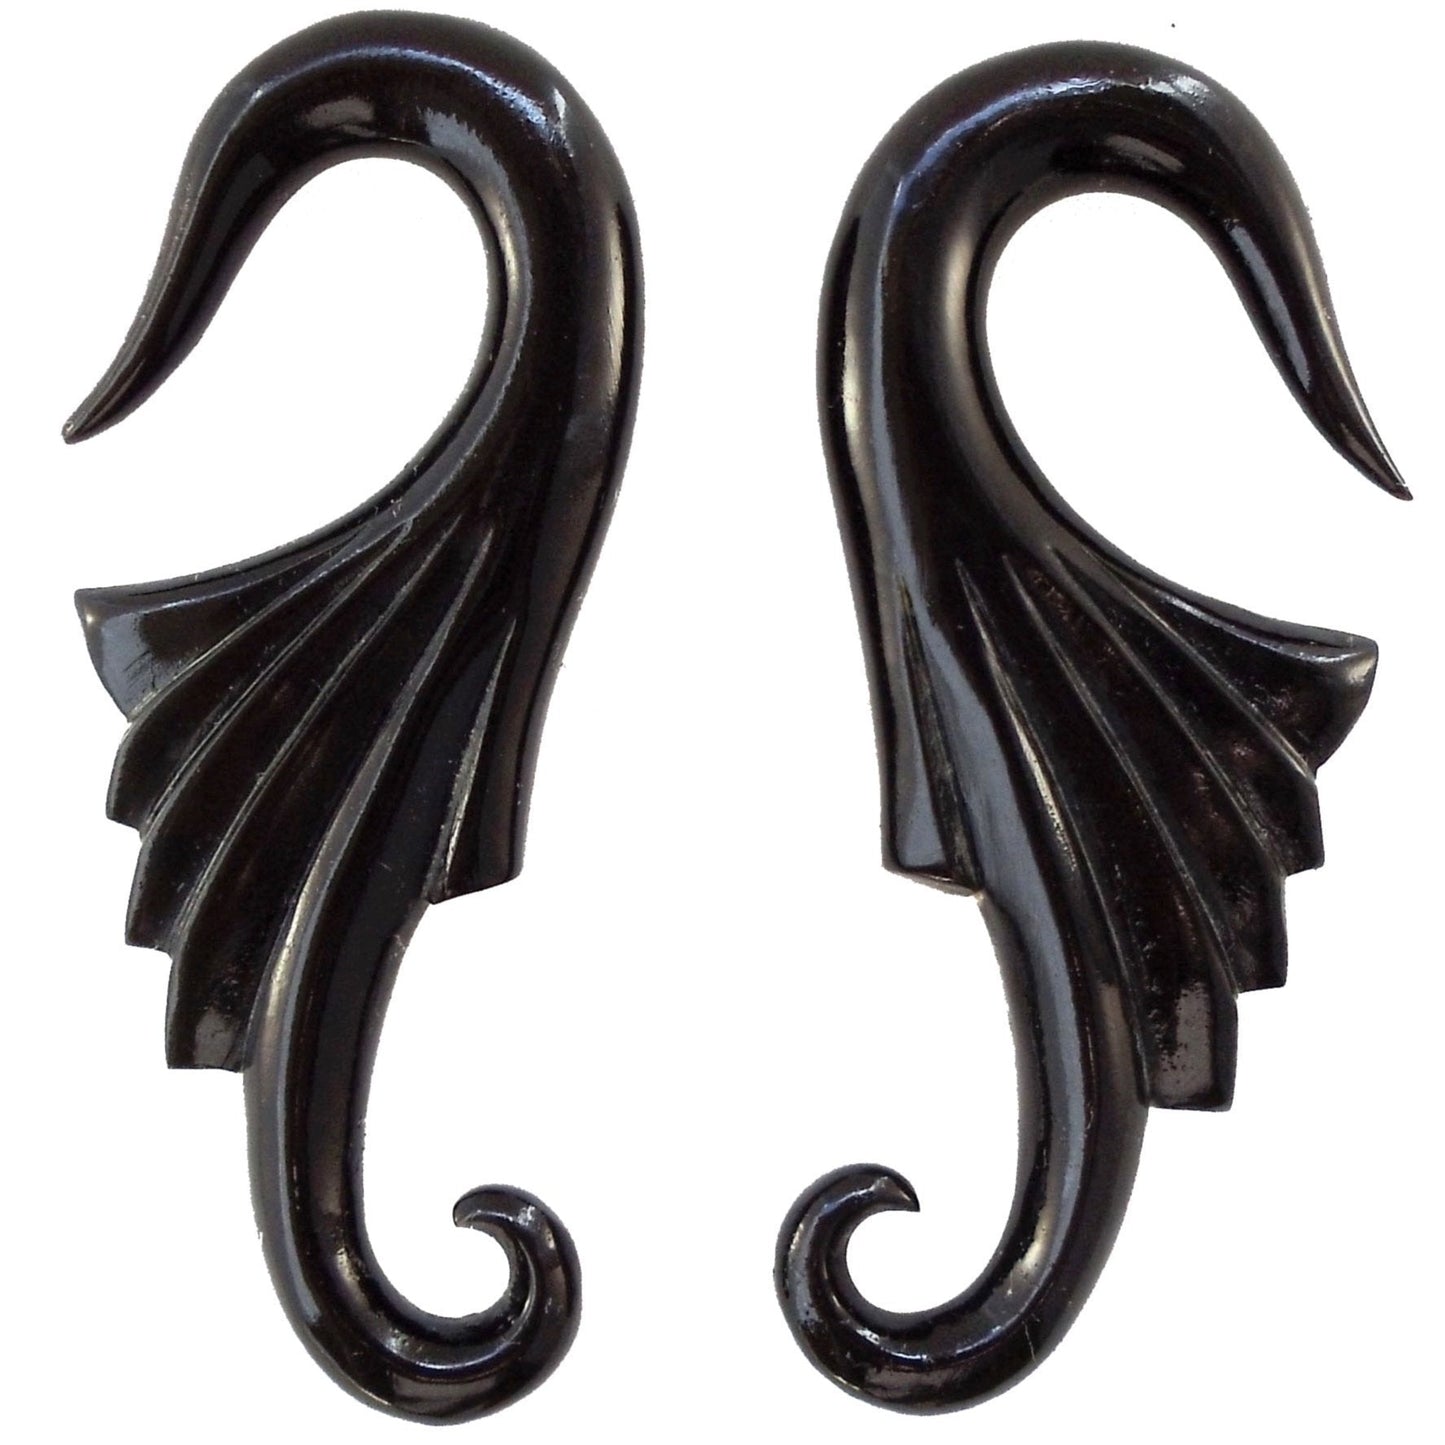 2 gauge earrings, black horn.